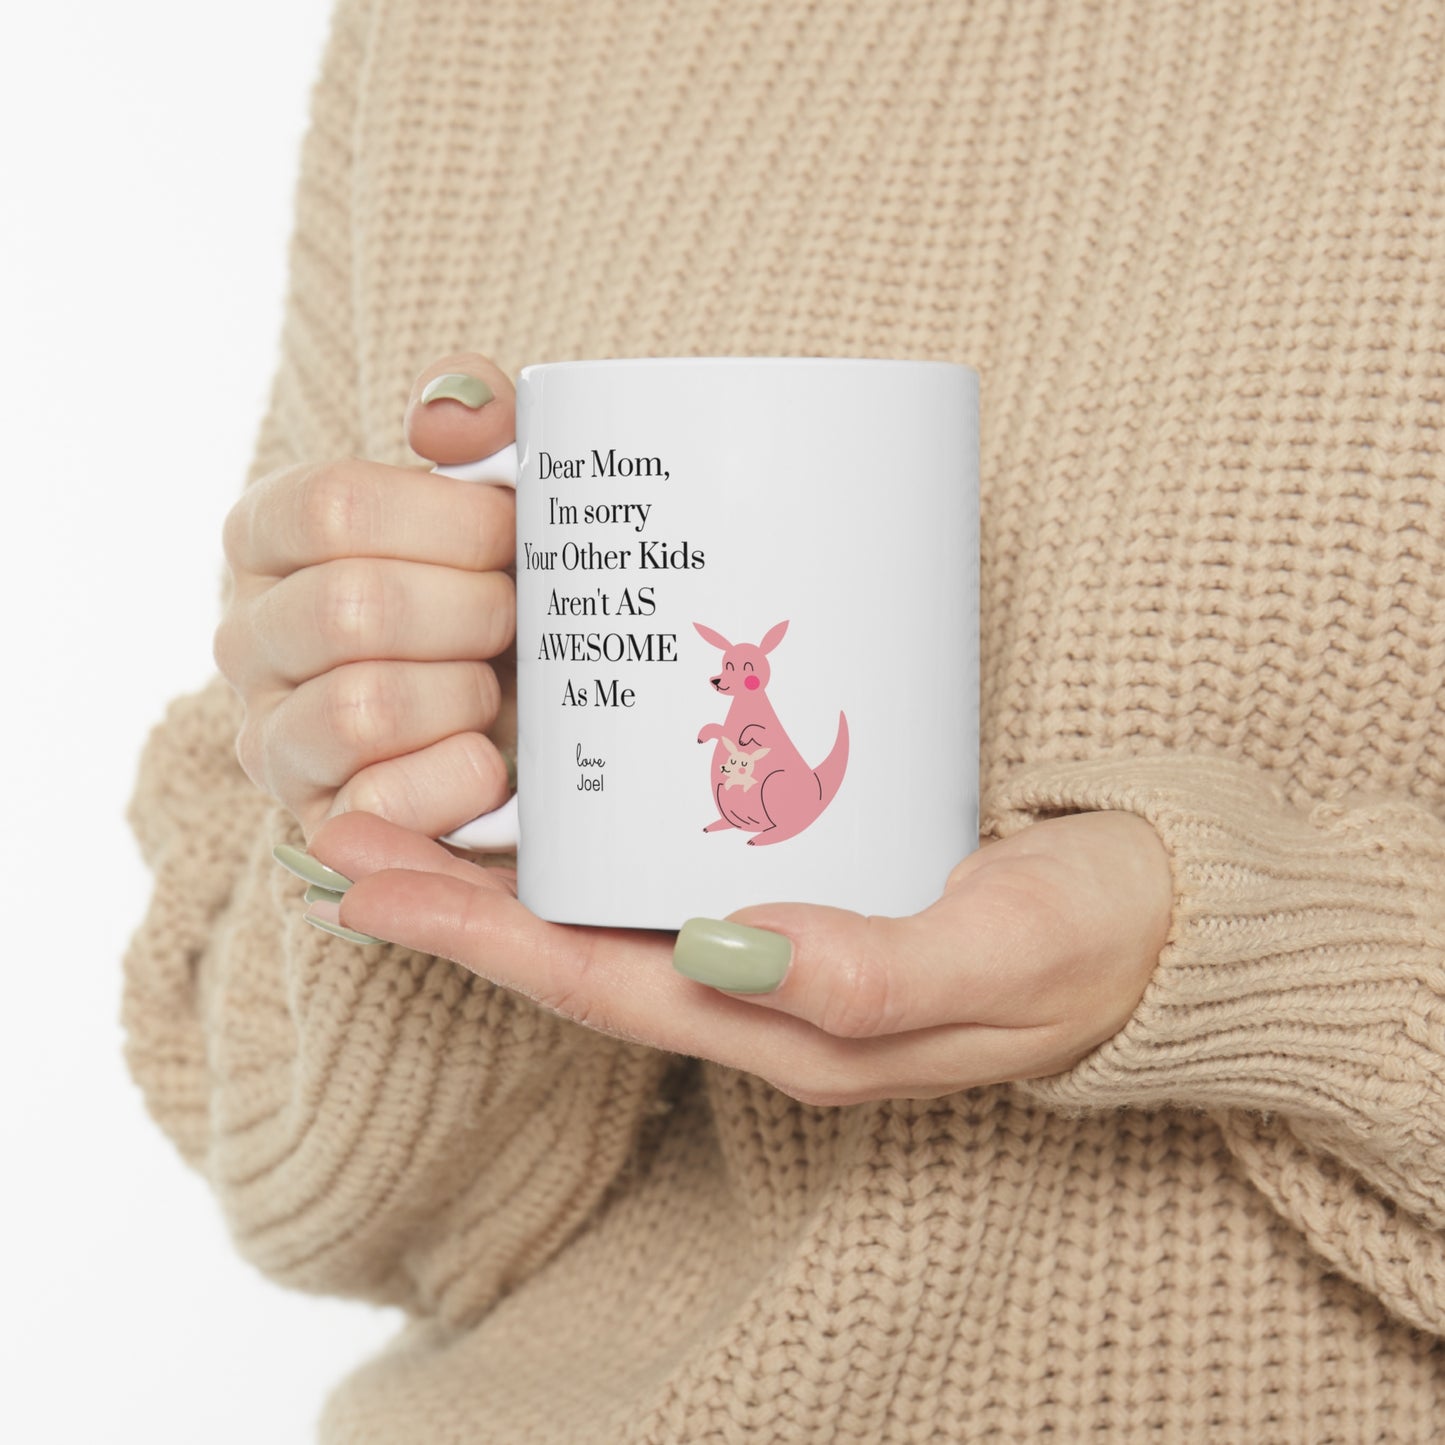 Shop Best Mother's Day Gift: Awesome Mug - Mug Goodlifebean Giant Plushies